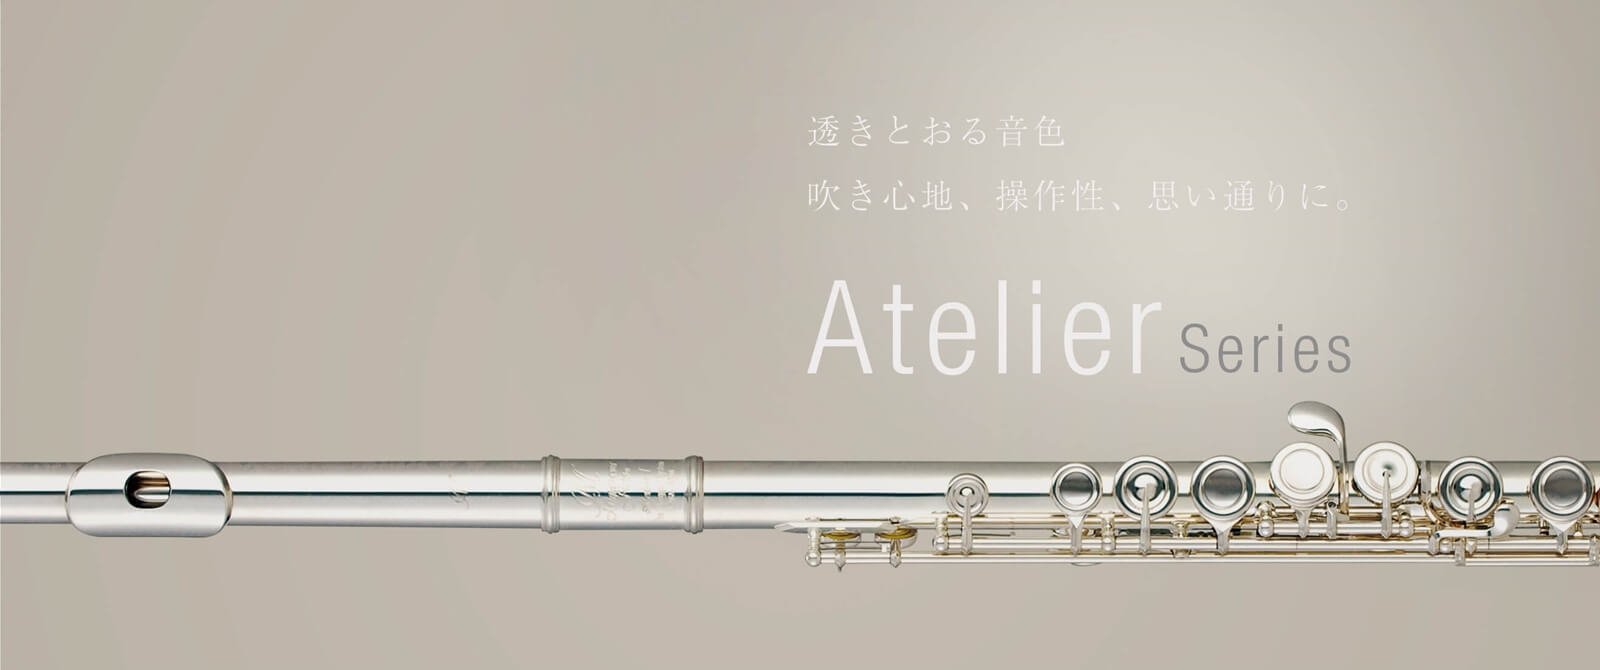 Atelierシリーズ | ミヤザワフルート